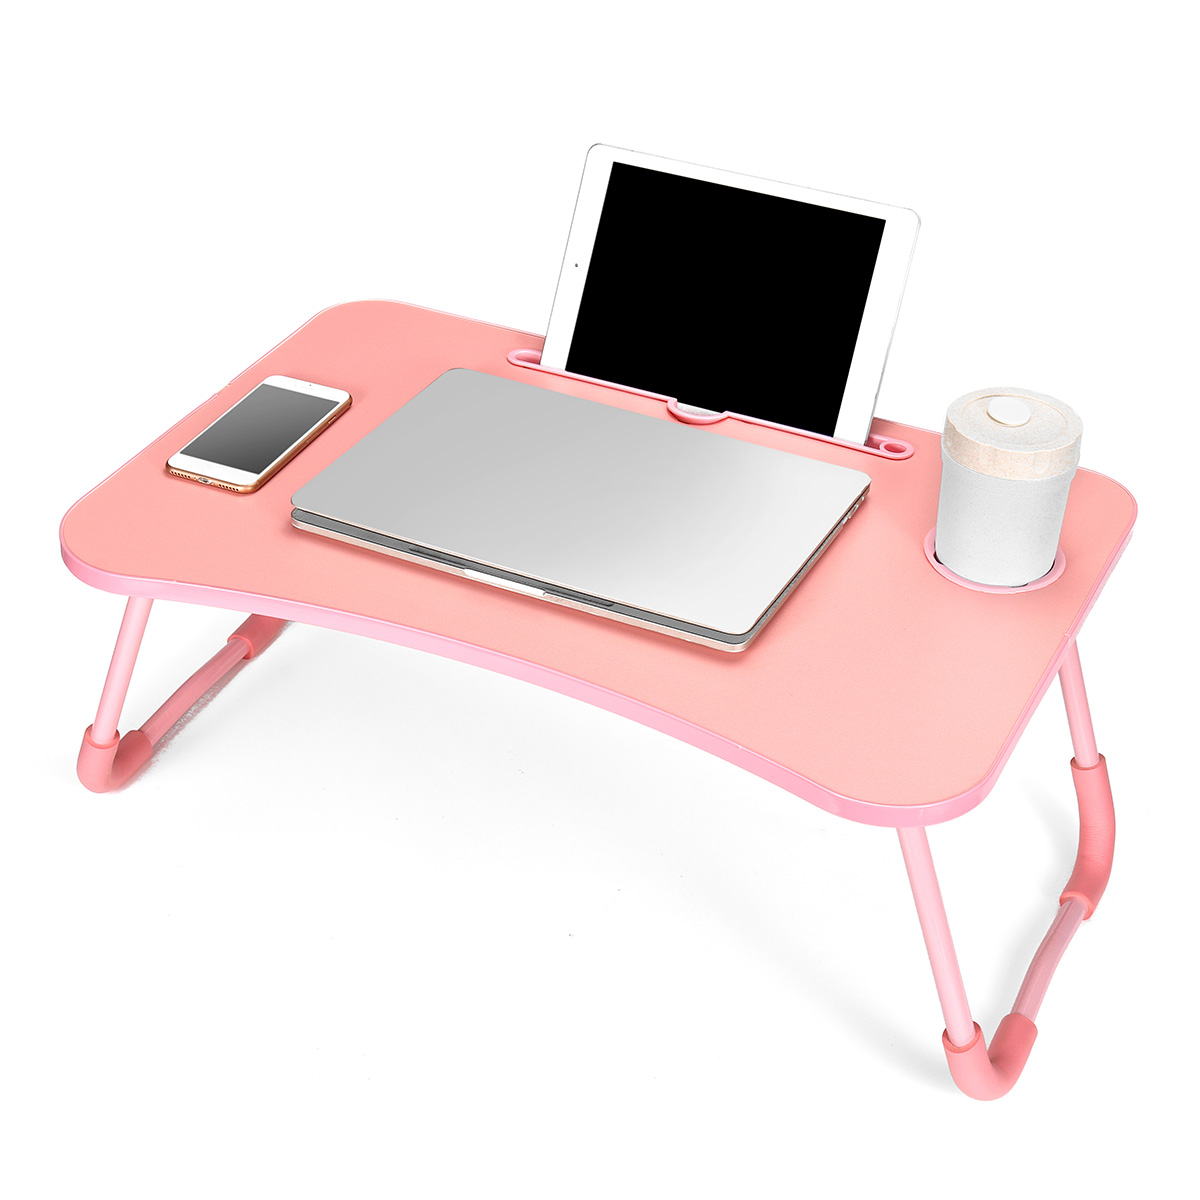 Suporte de mesa dobrável para laptop Mesa portátil ajustável Dormitório Alunos aprendendo a escrever em casa trabalhando suprimentos para mesa preguiçosa